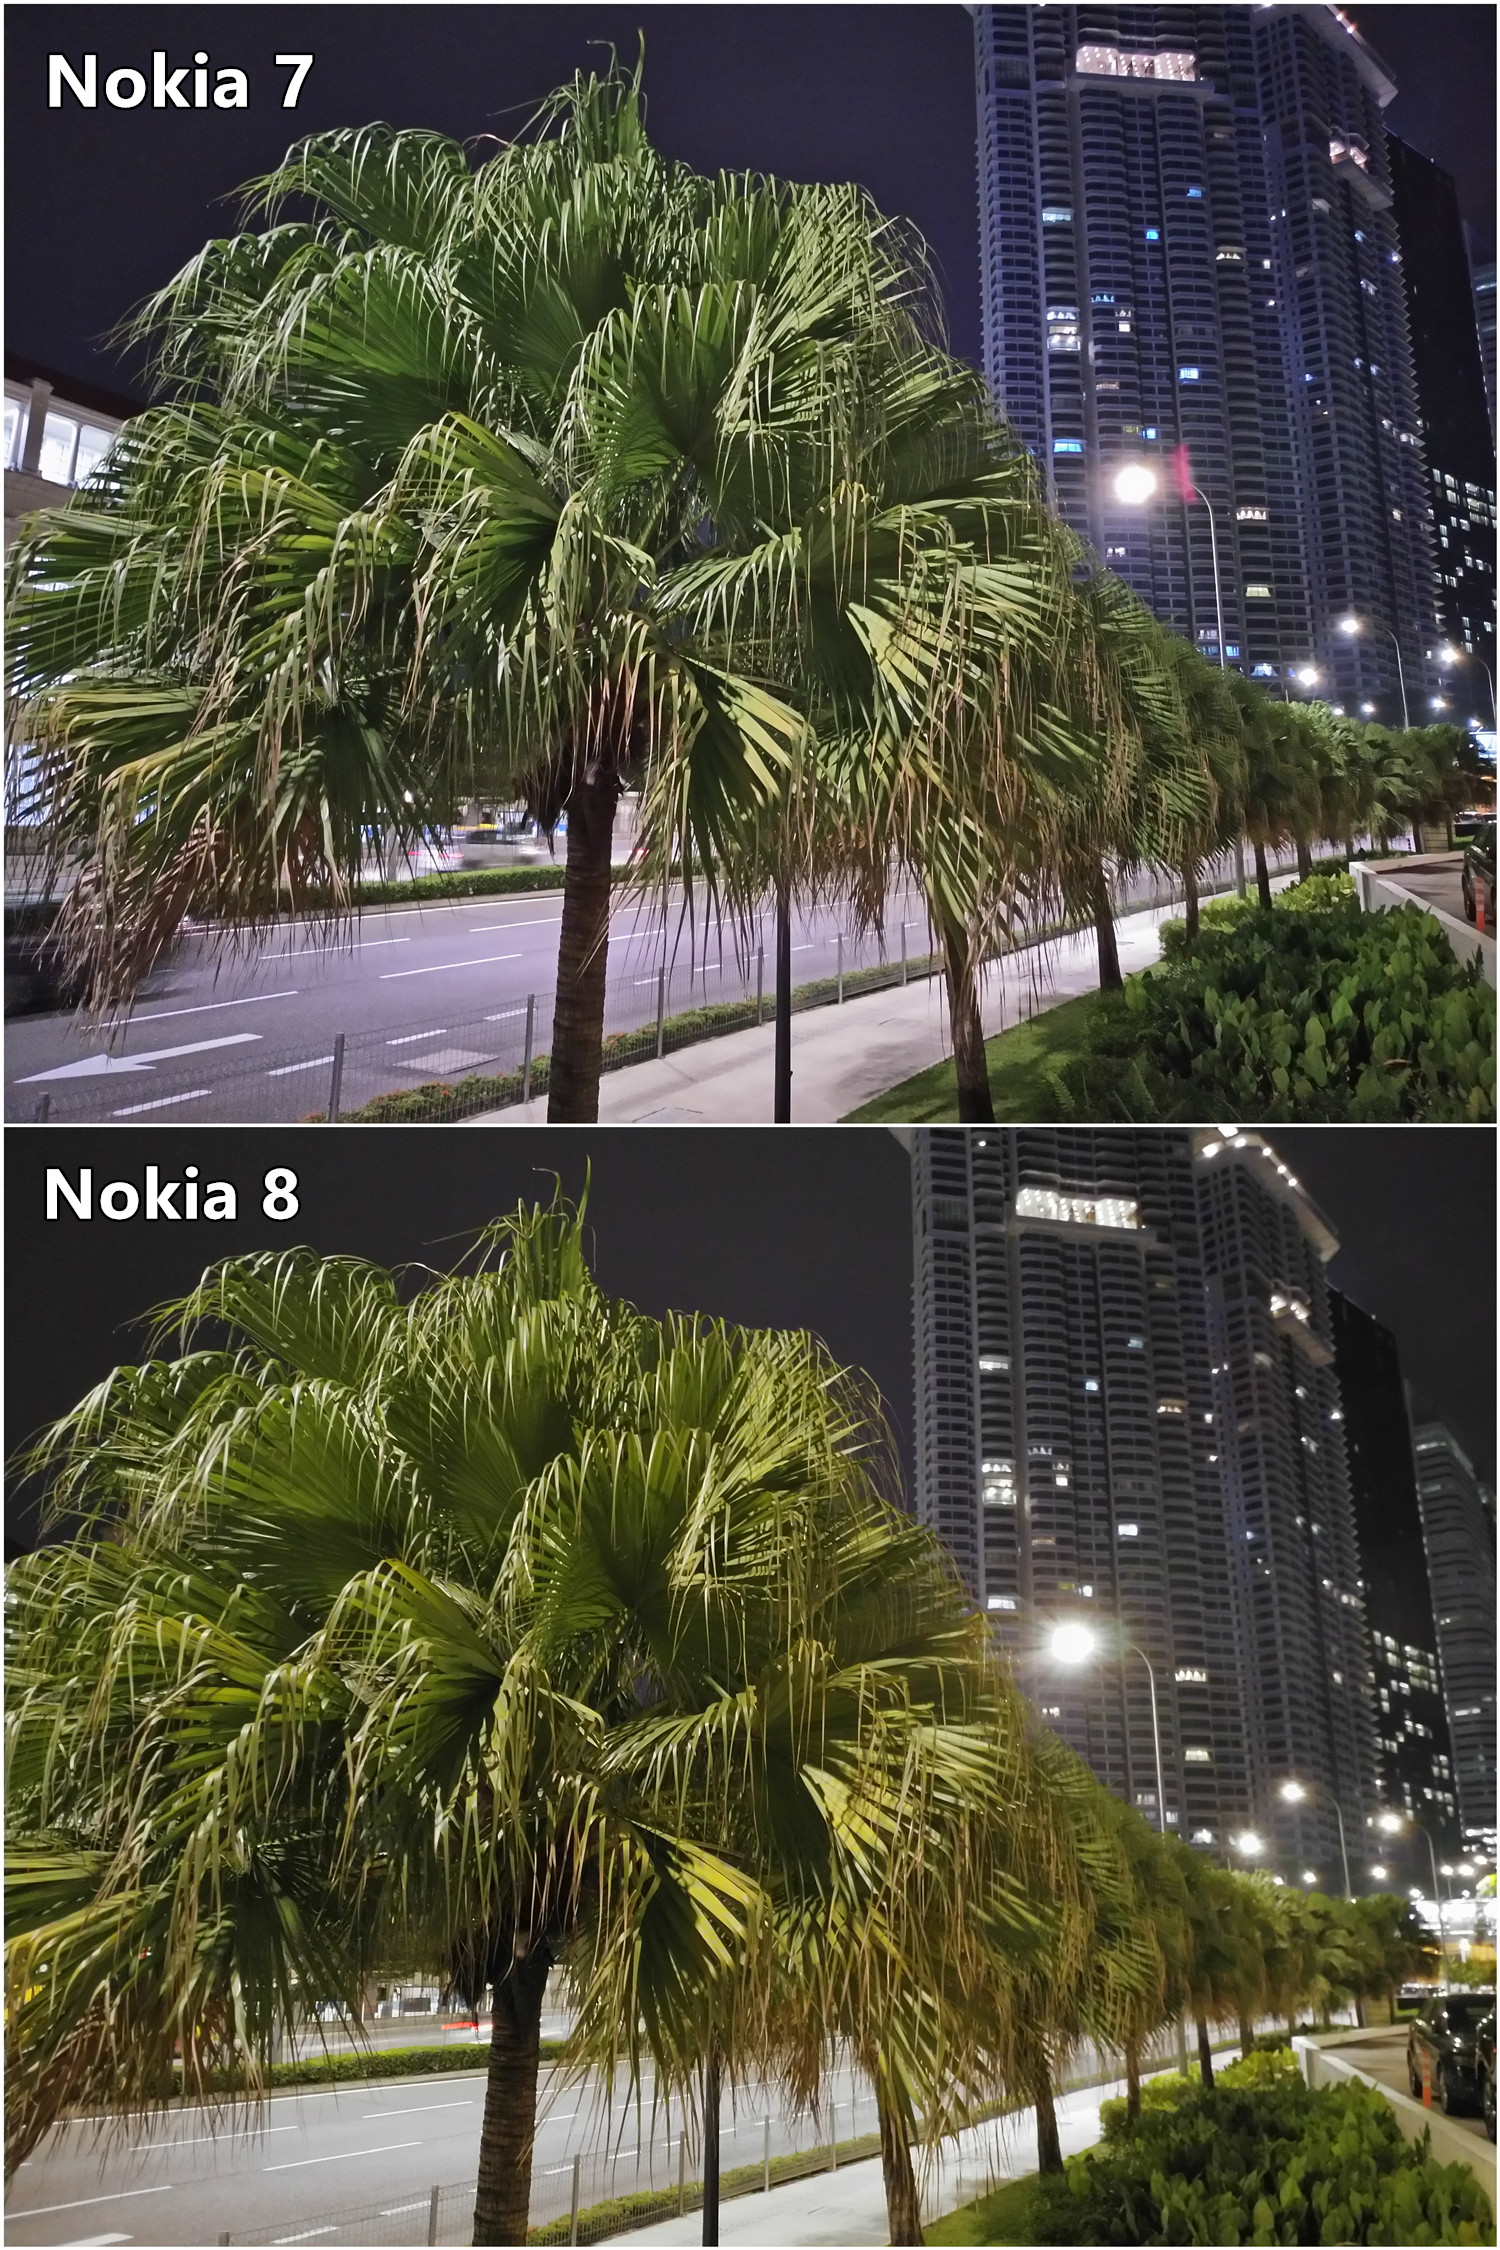 ZEISS 鏡頭對對碰：當中端 Nokia 7 遇上旗艦 Nokia 8，低光源拍攝差距大嗎？ 5